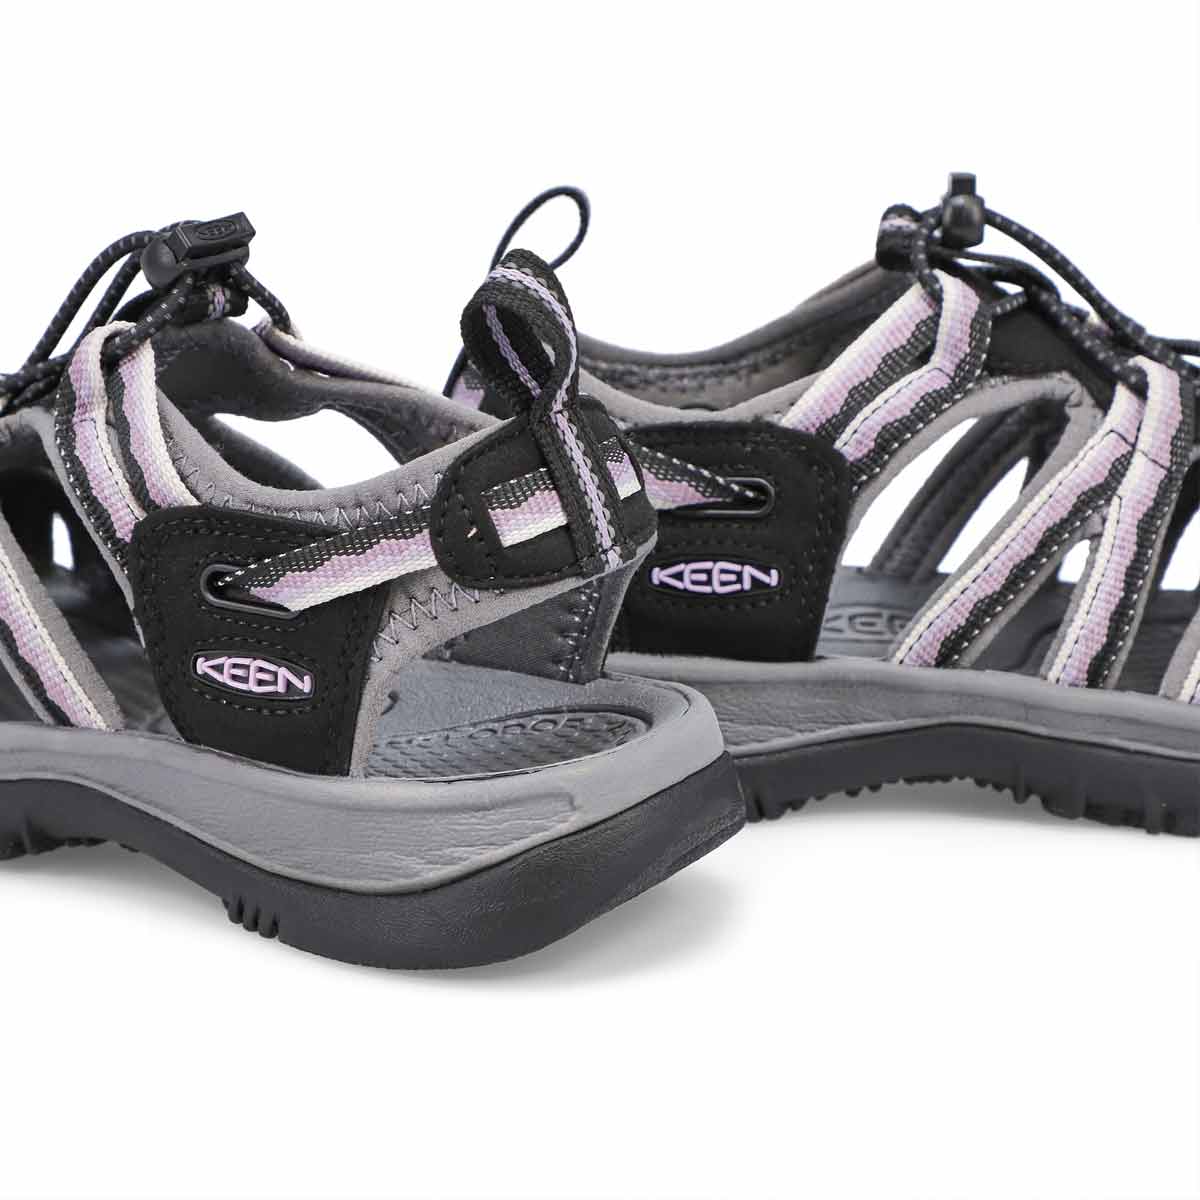 Women's Whisper Sport Sandal - Black/Thistle